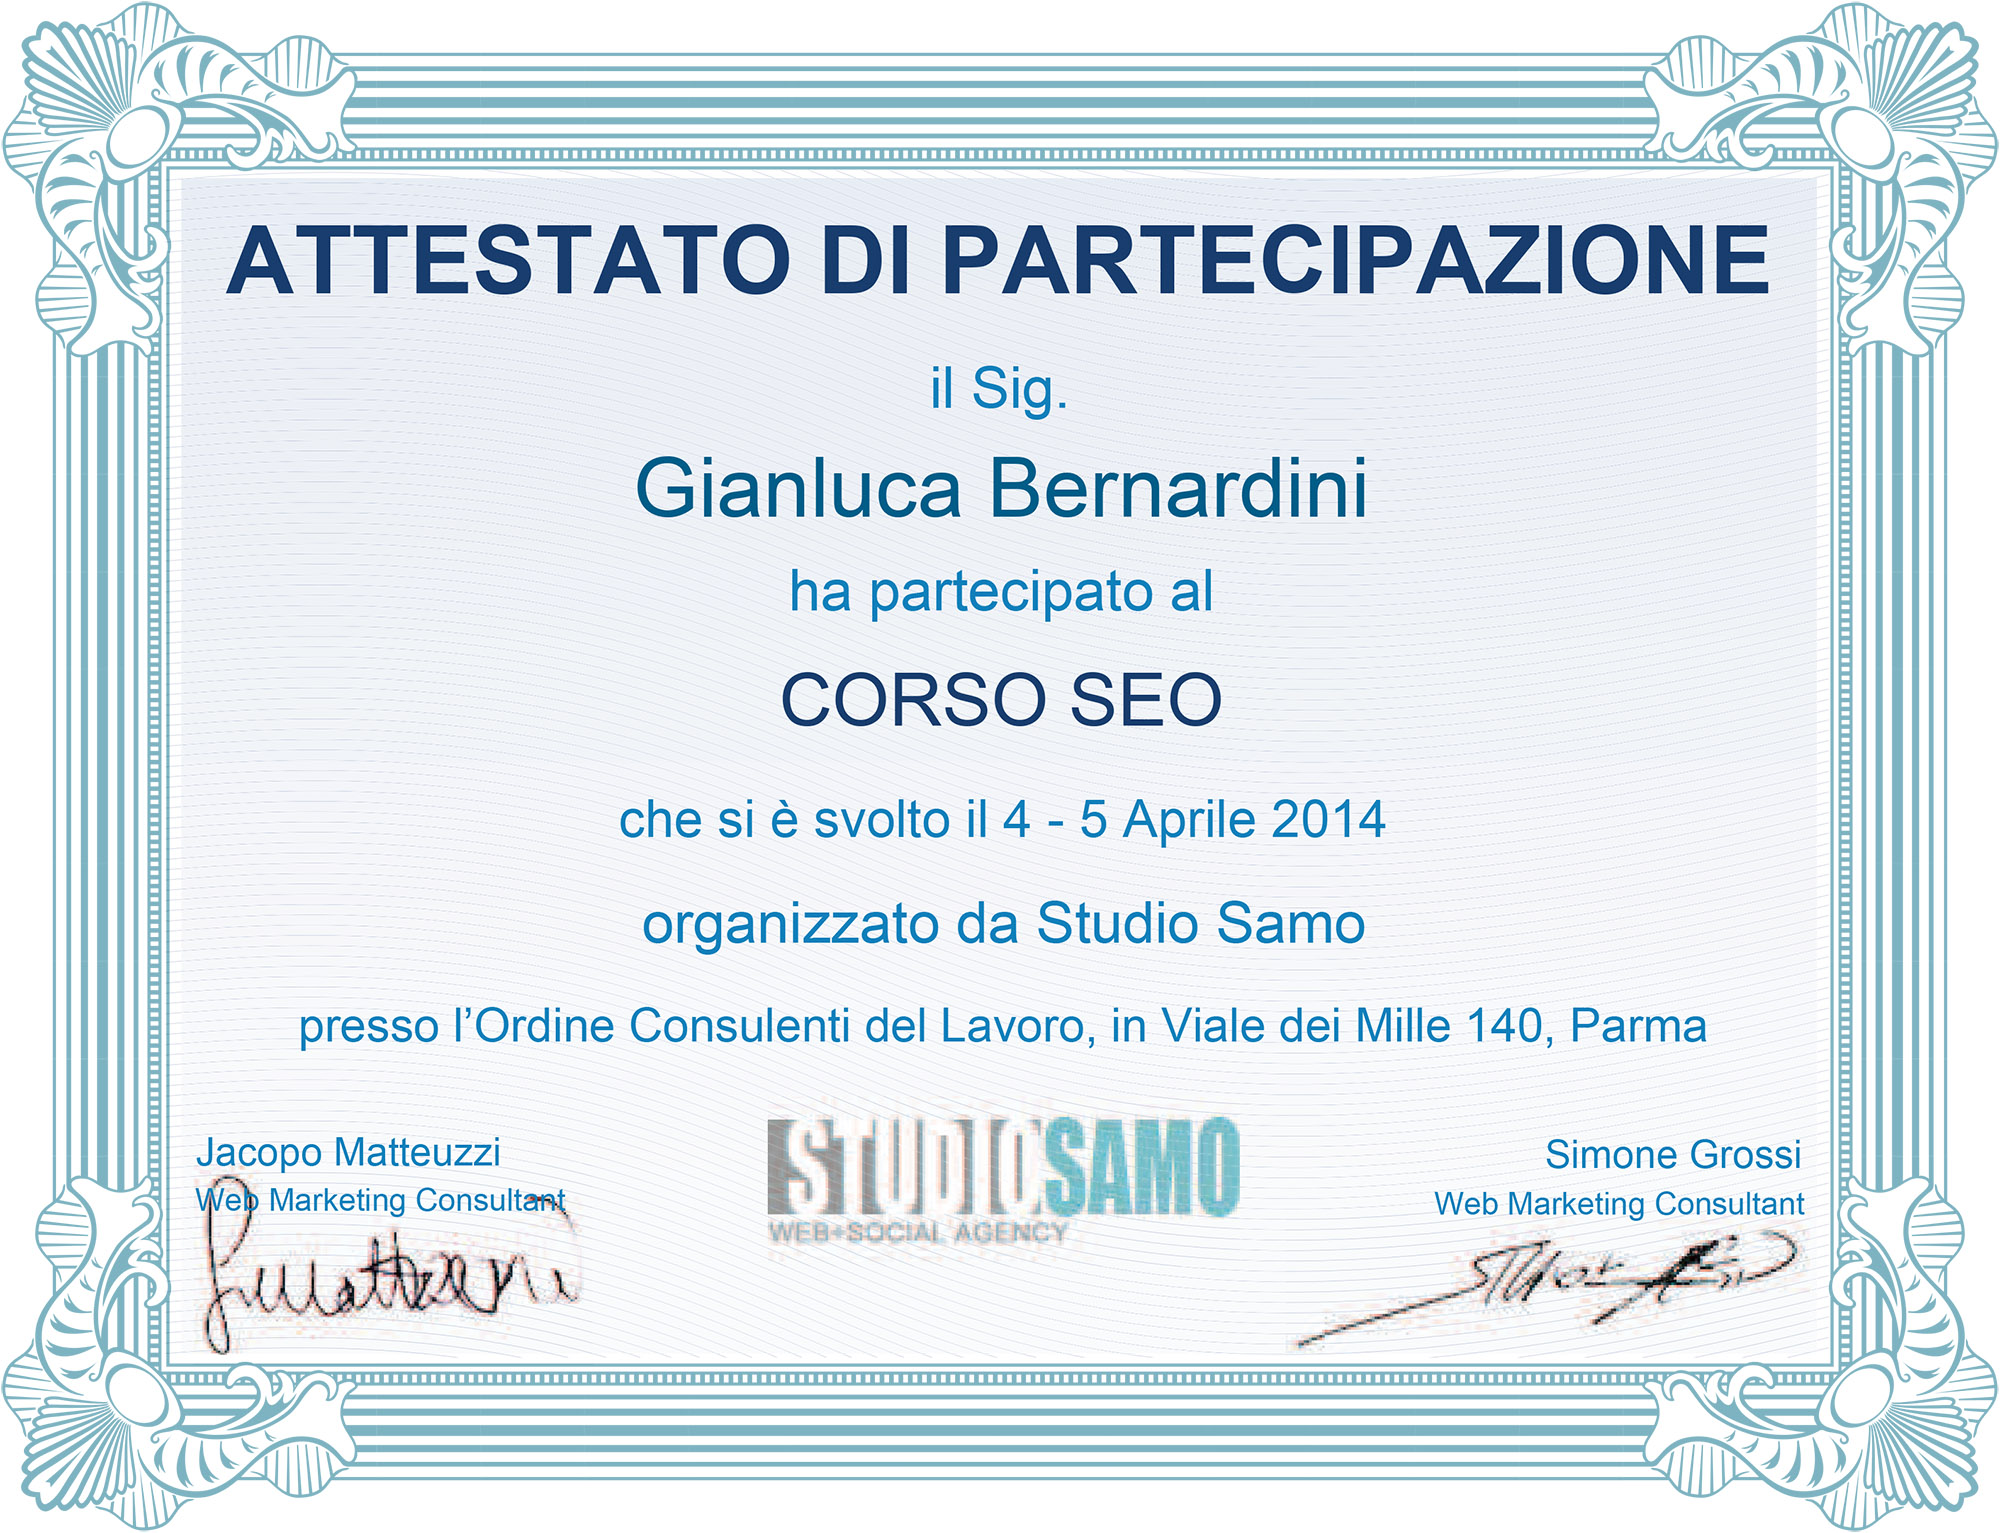 Attestato Studio Samo 2014